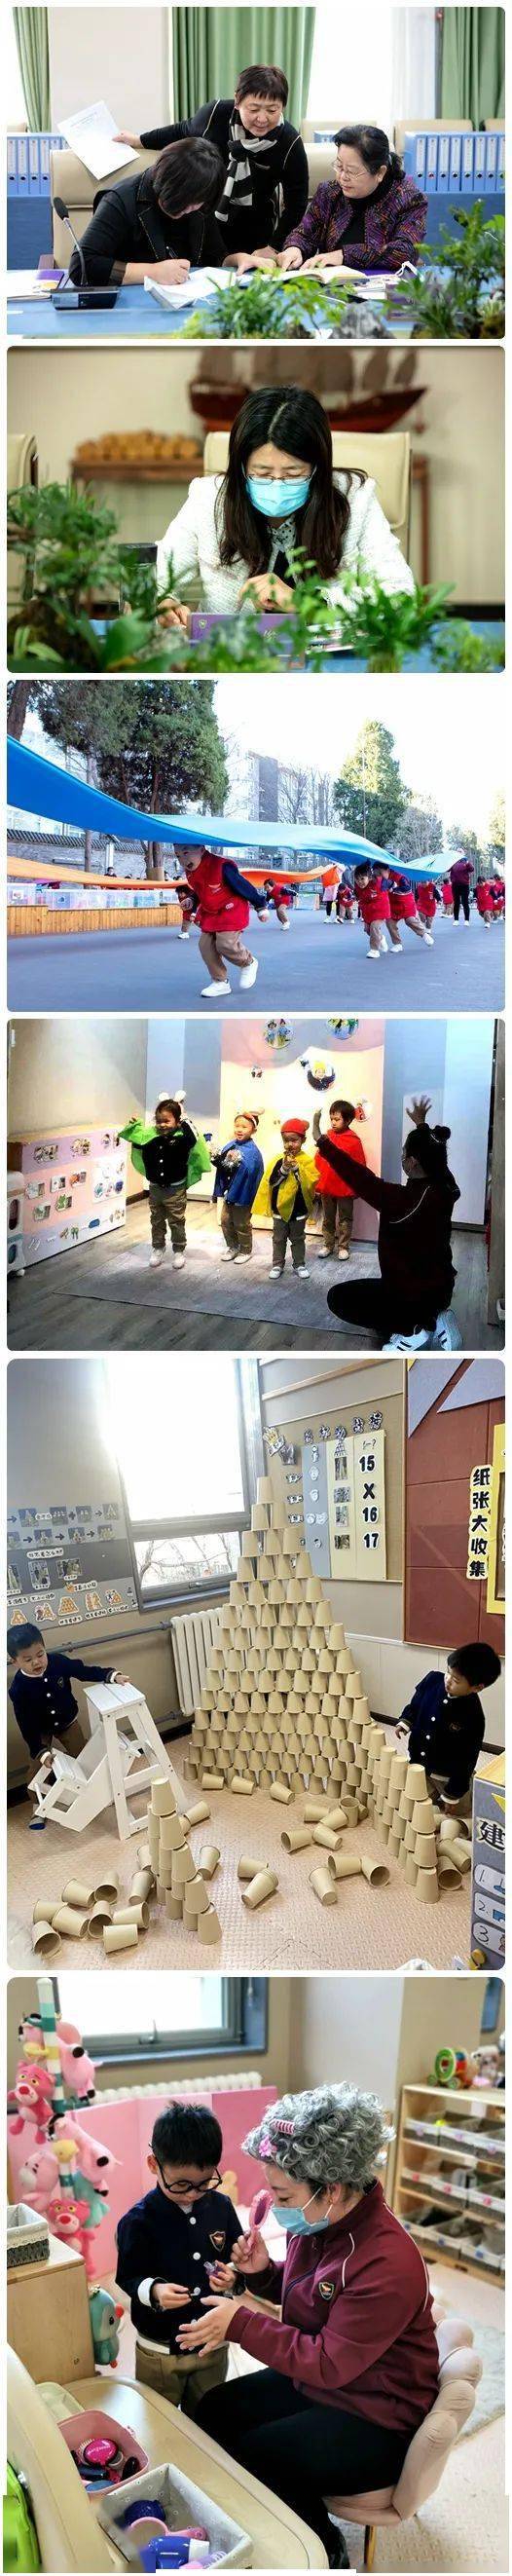 教工委|【第425期】海淀区教委对北京中外友好幼儿院开展A等级幼儿园办园质量督导评估工作